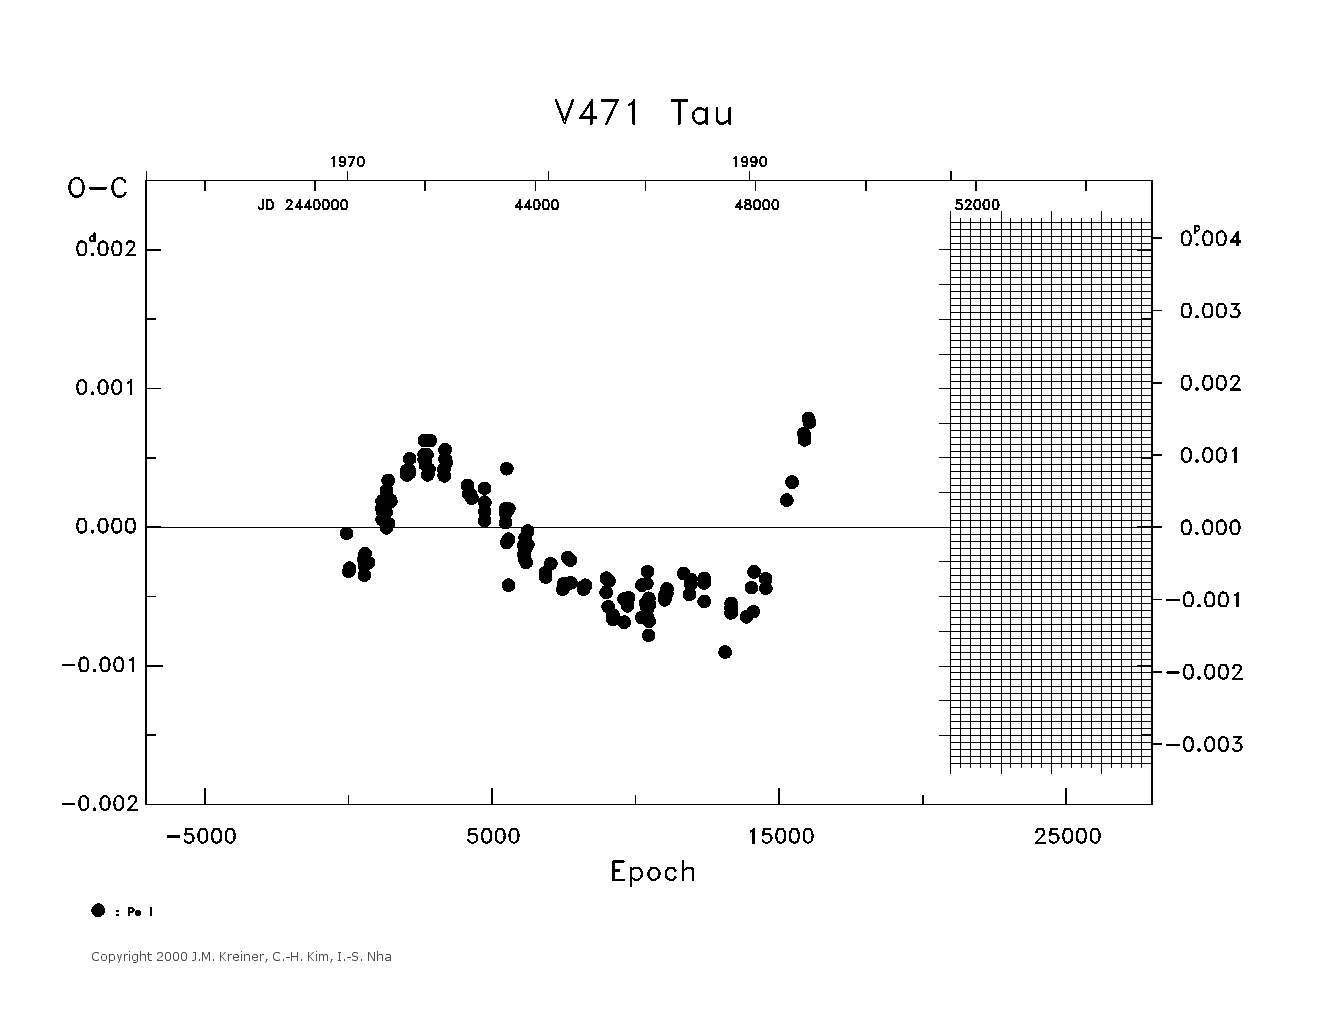 [IMAGE: large V471 TAU O-C diagram]